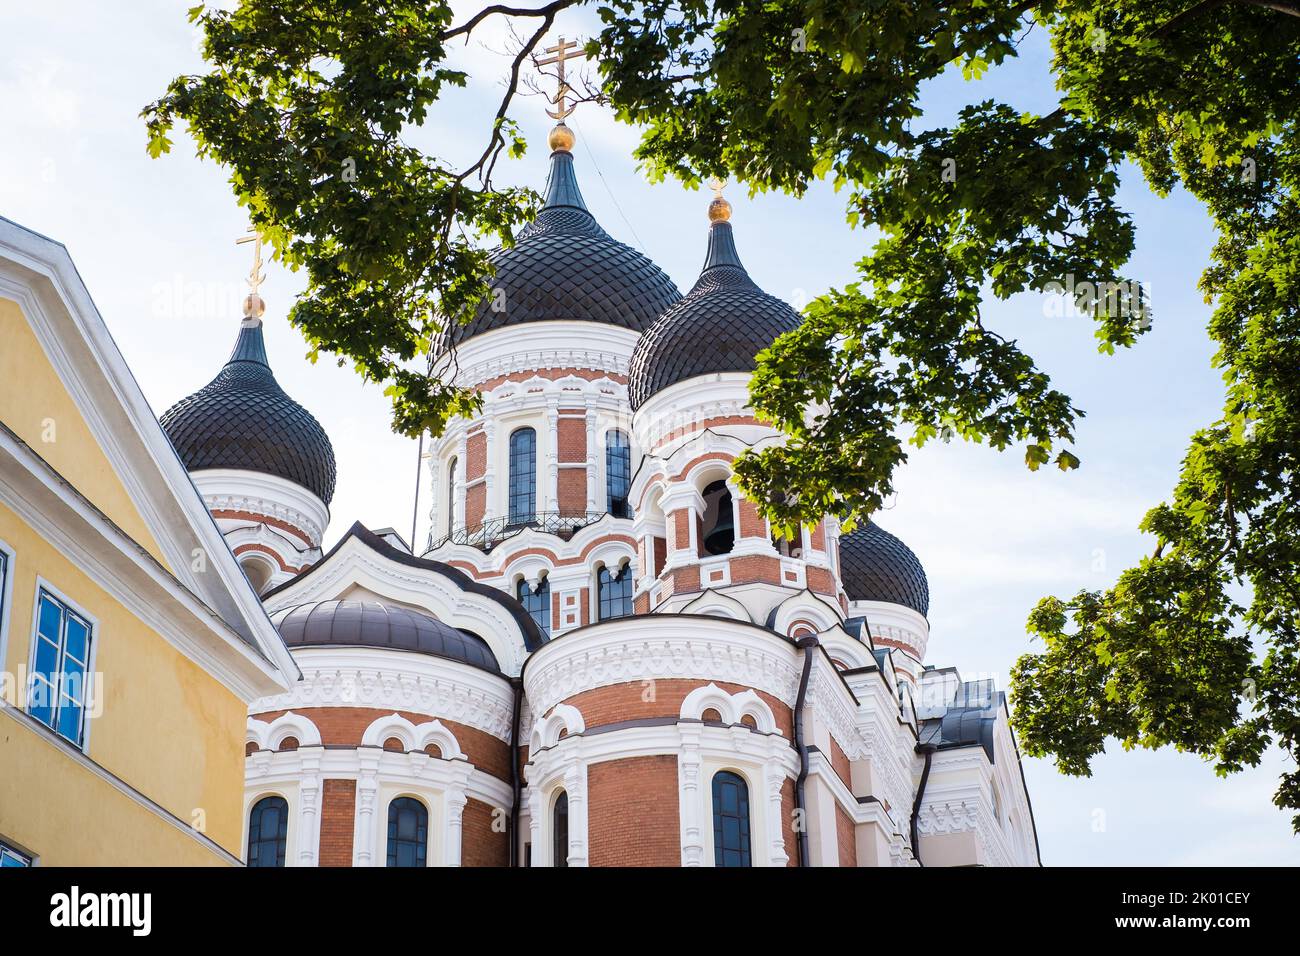 Alexander-Nevsky-Kathedrale auf dem Toompea-Hügel in Tallinn, Estland. Blick von der Pikk jalg (Englisch: Long Leg) Straße. Stockfoto